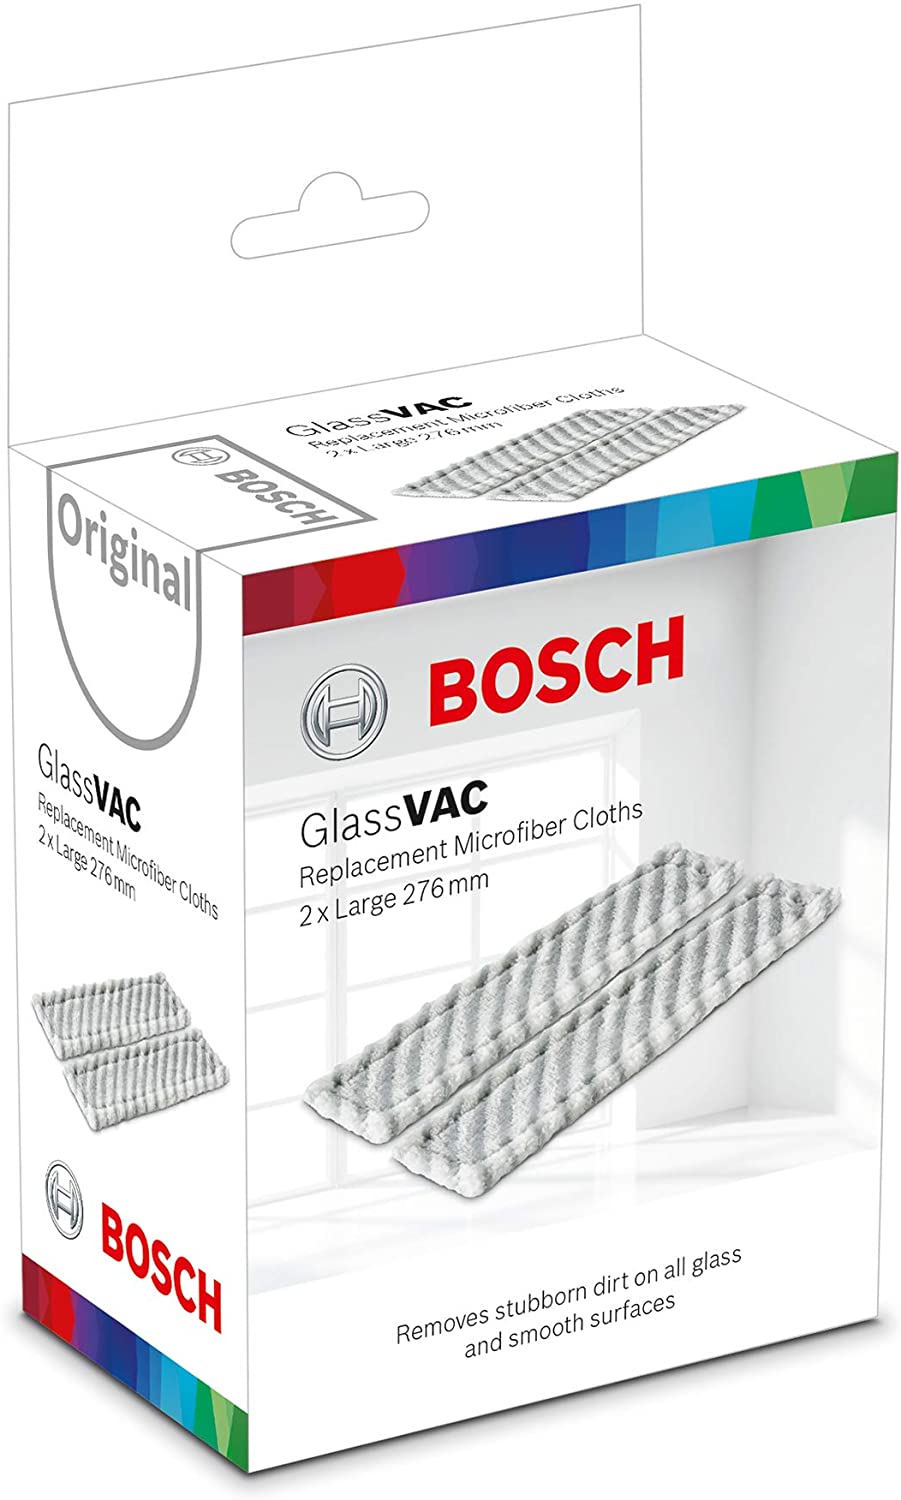 Микрофибра Bosch микрофибра GlassVAC отзывы - изображения 5